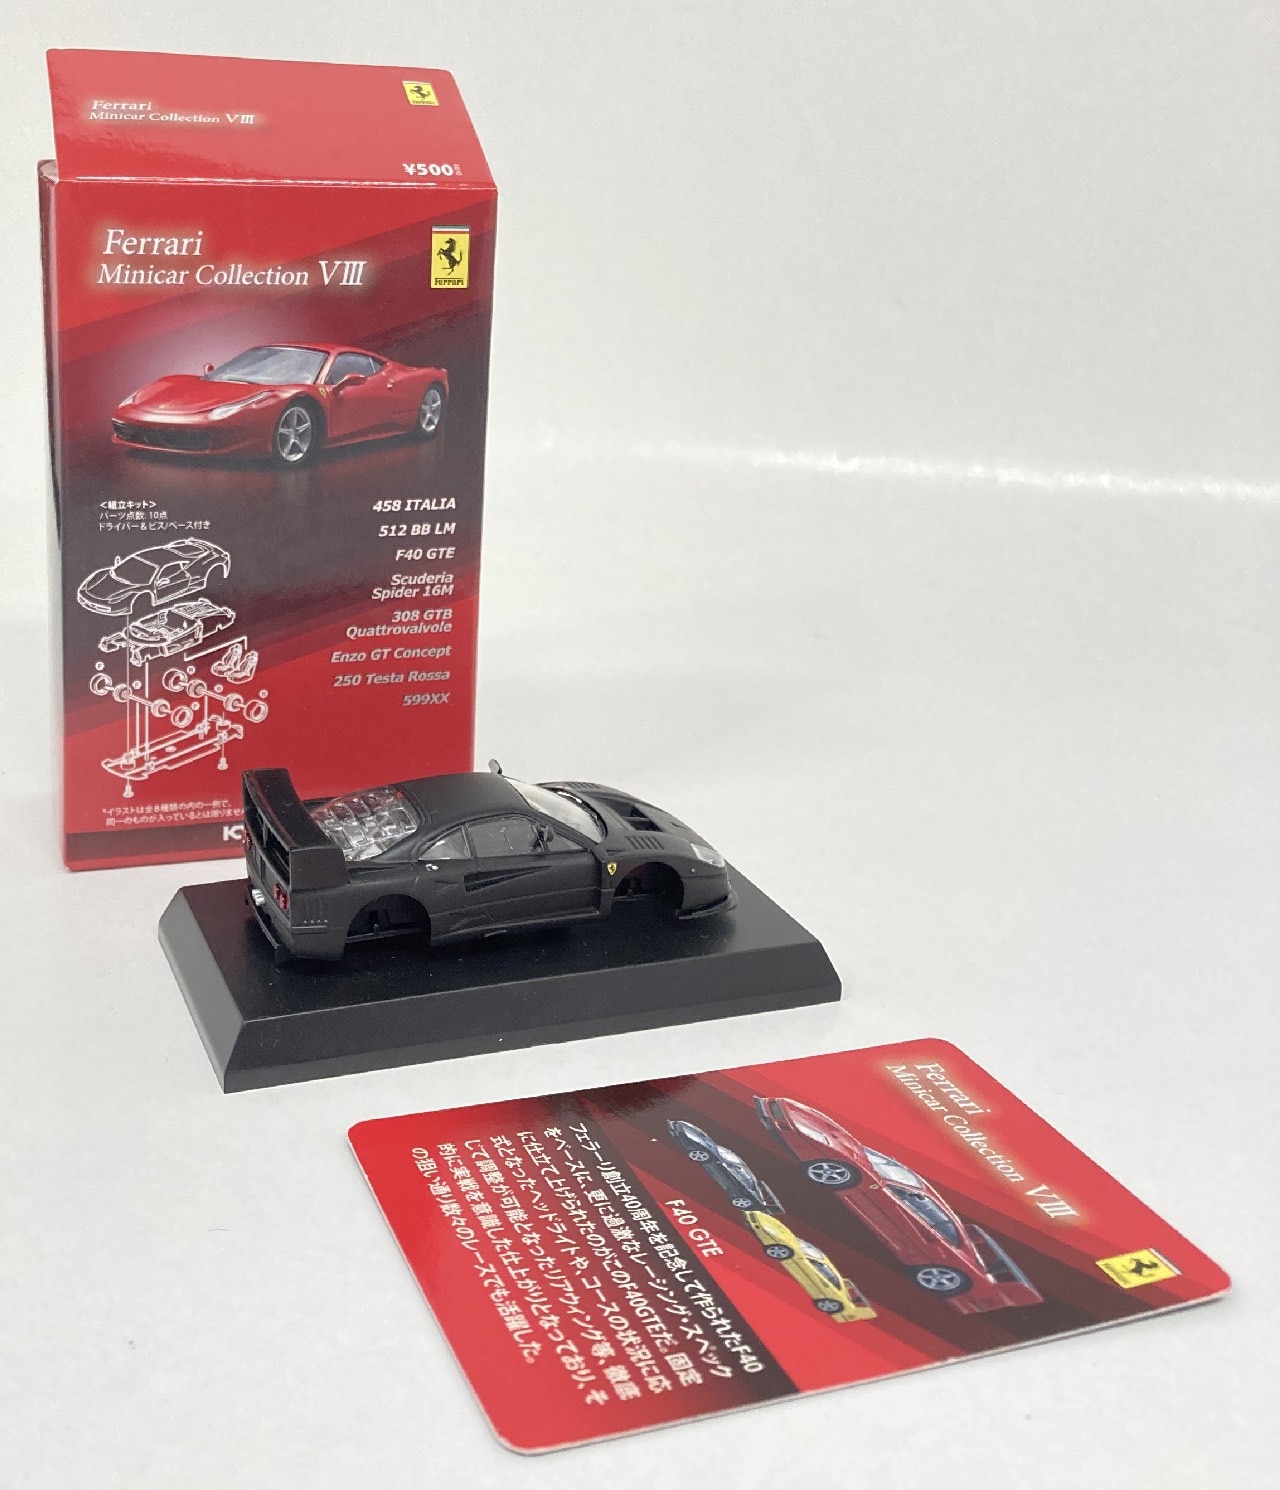 京商 フェラーリミニカーコレクション VIII F40 GTE